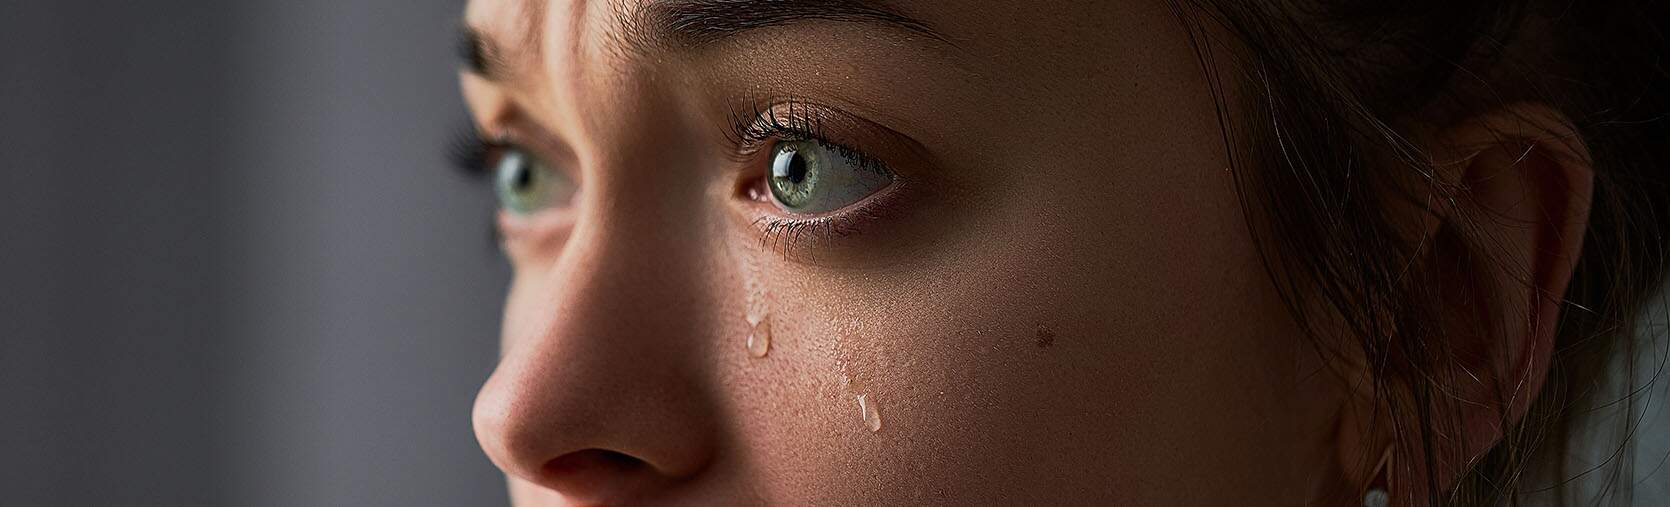 Gros plan des yeux d’une femme pleurant